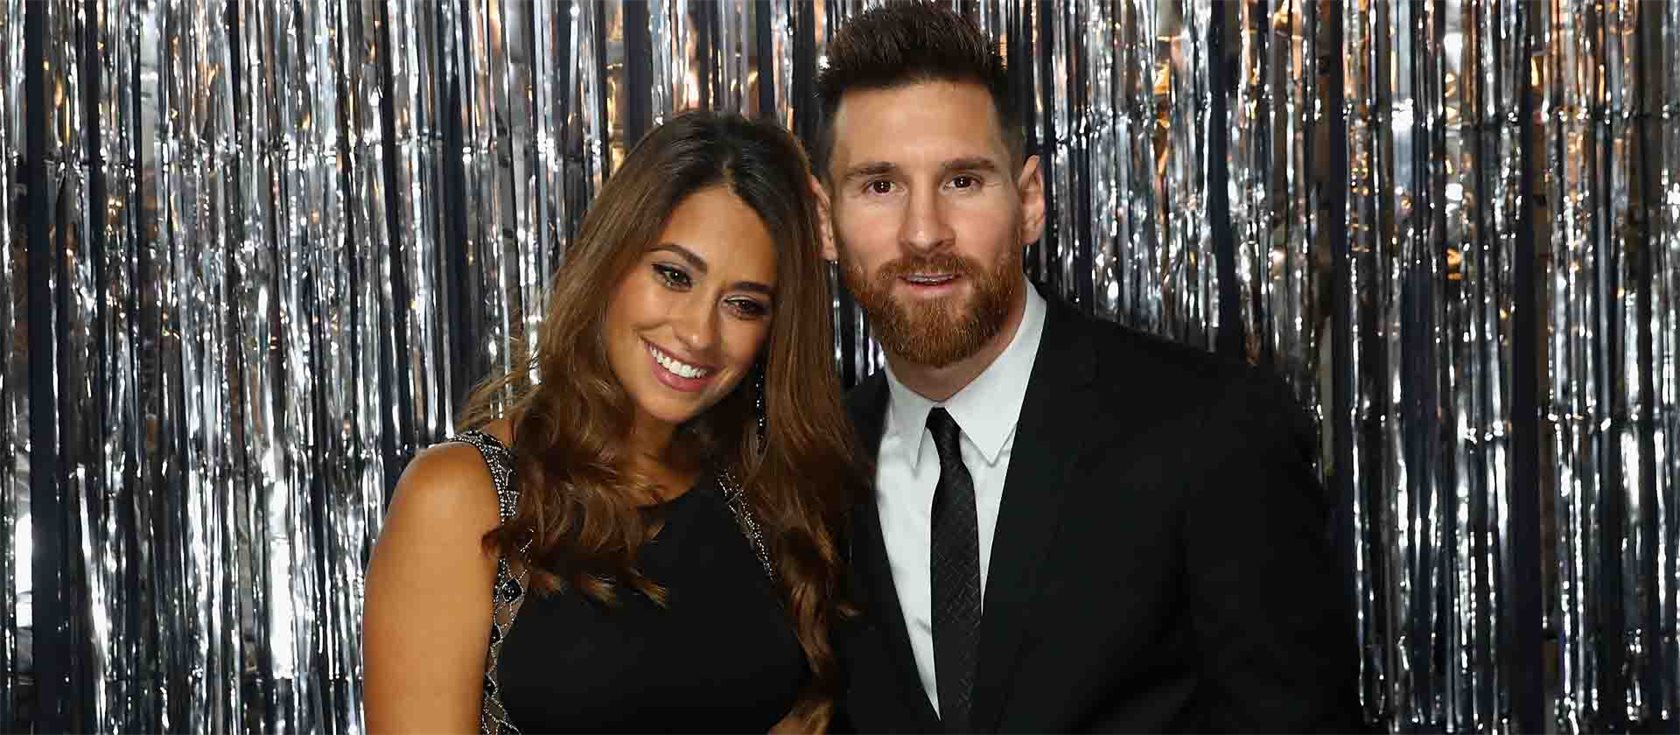 Lionel Messi - the ball genius from Rosario